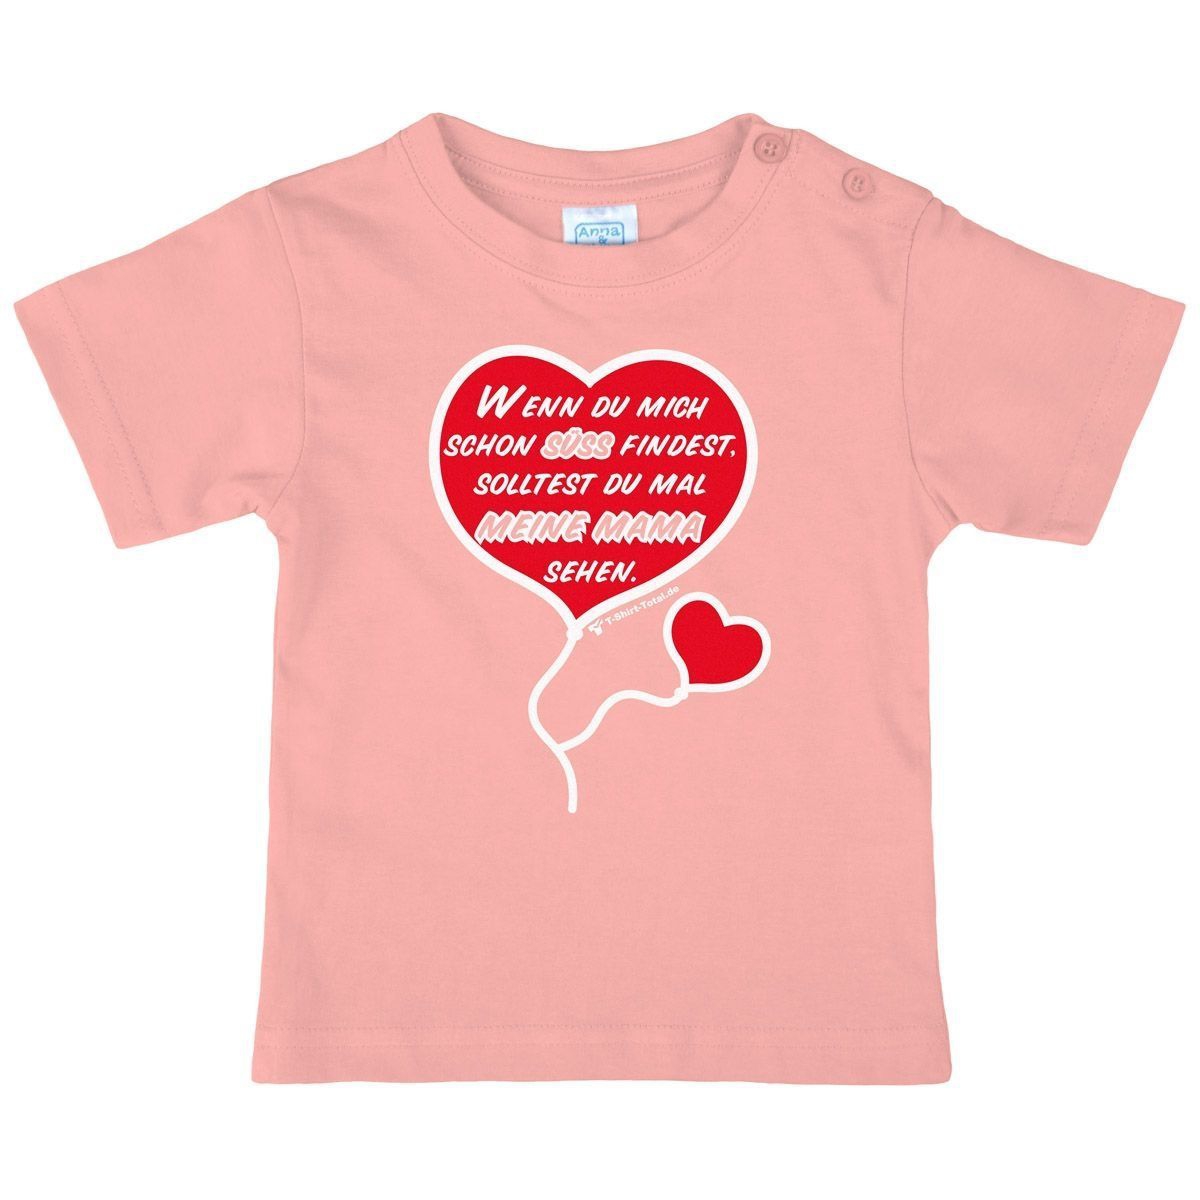 Süß finden Kinder T-Shirt rosa 98